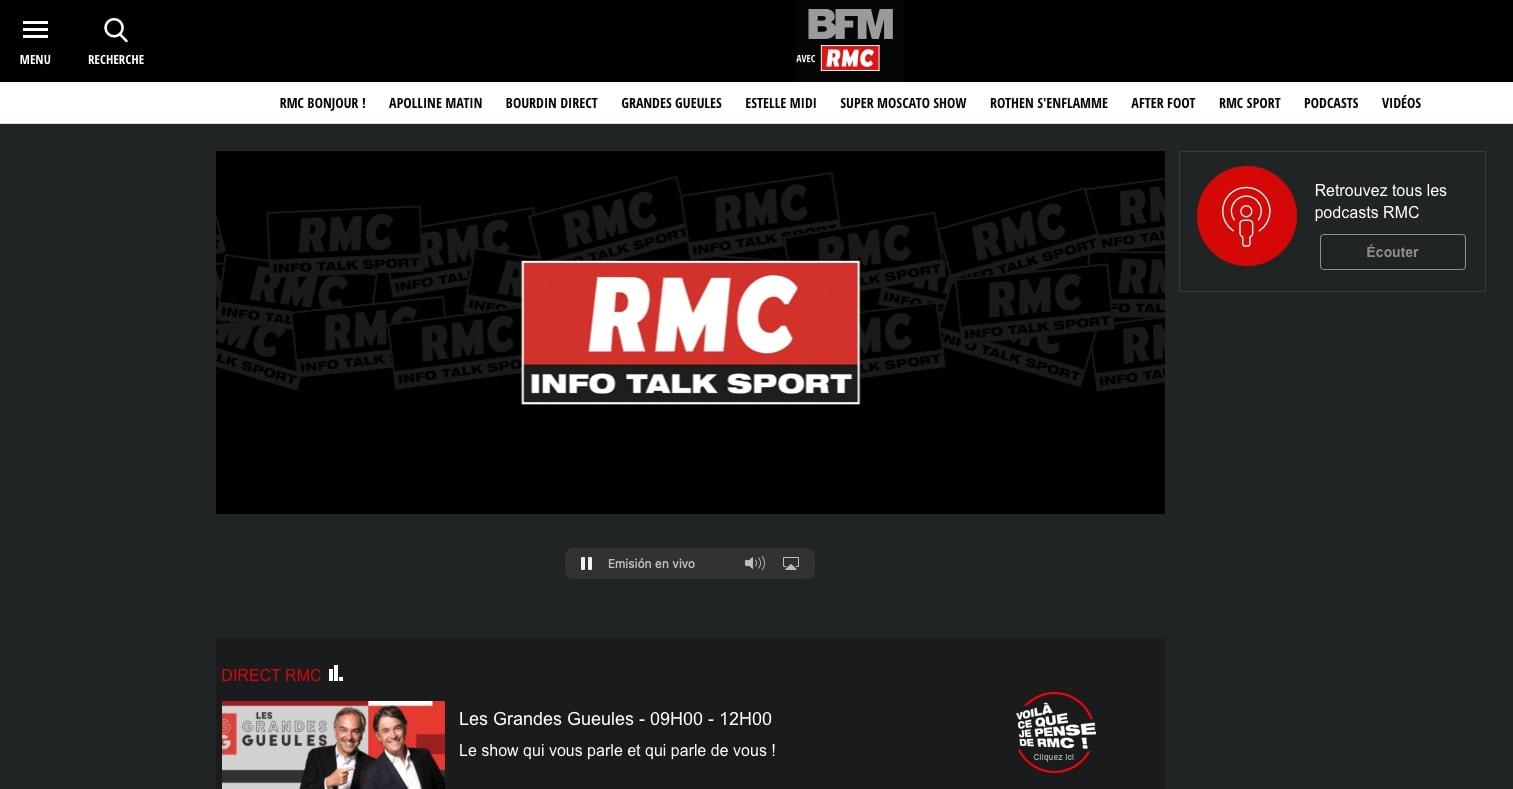 rmc info talk sport